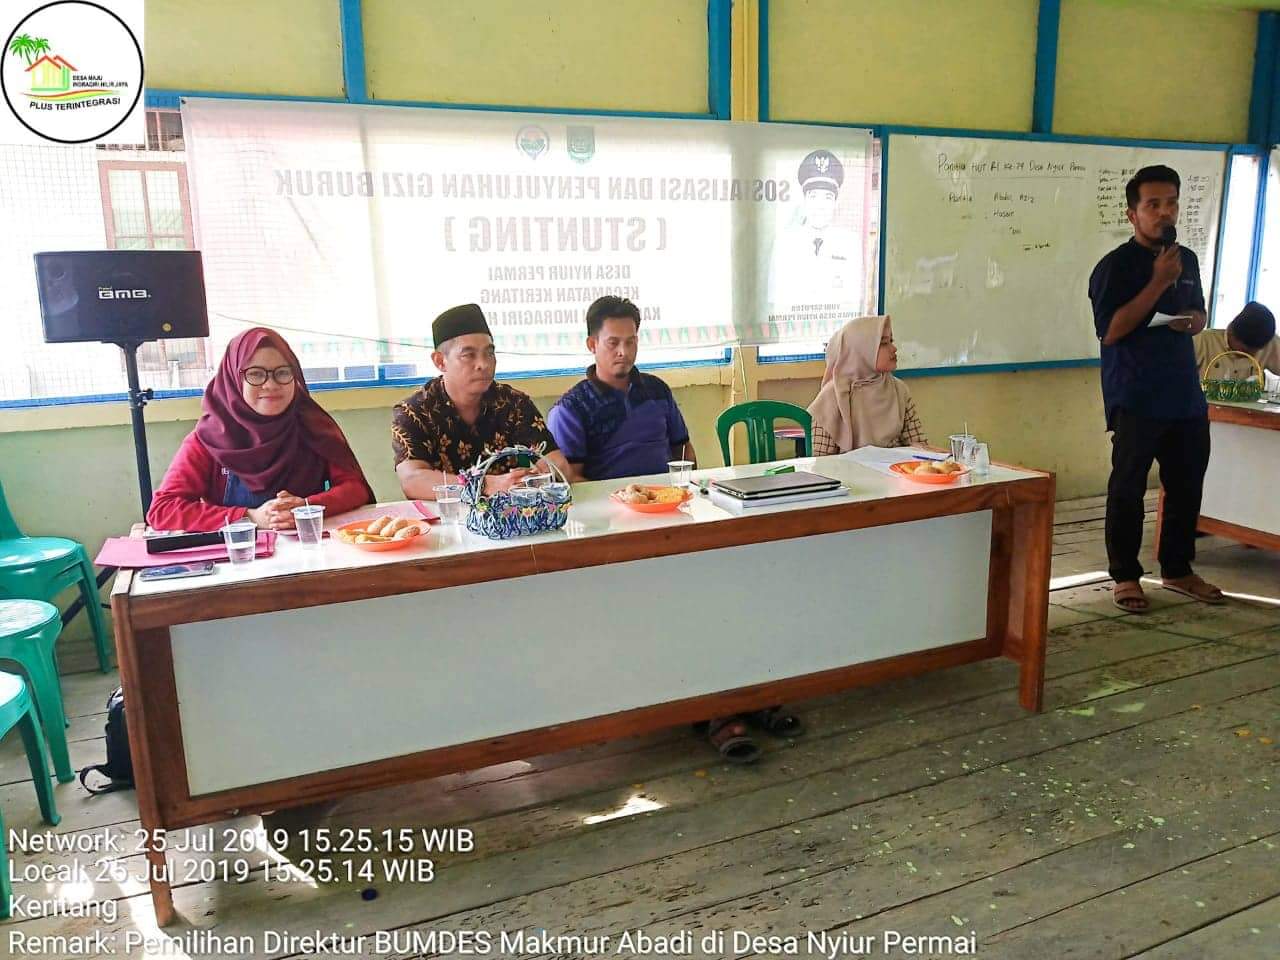 Marzuki Terpilih Jadi Direktur BUMDesa Makmur Abadi Desa Nyiur Permai